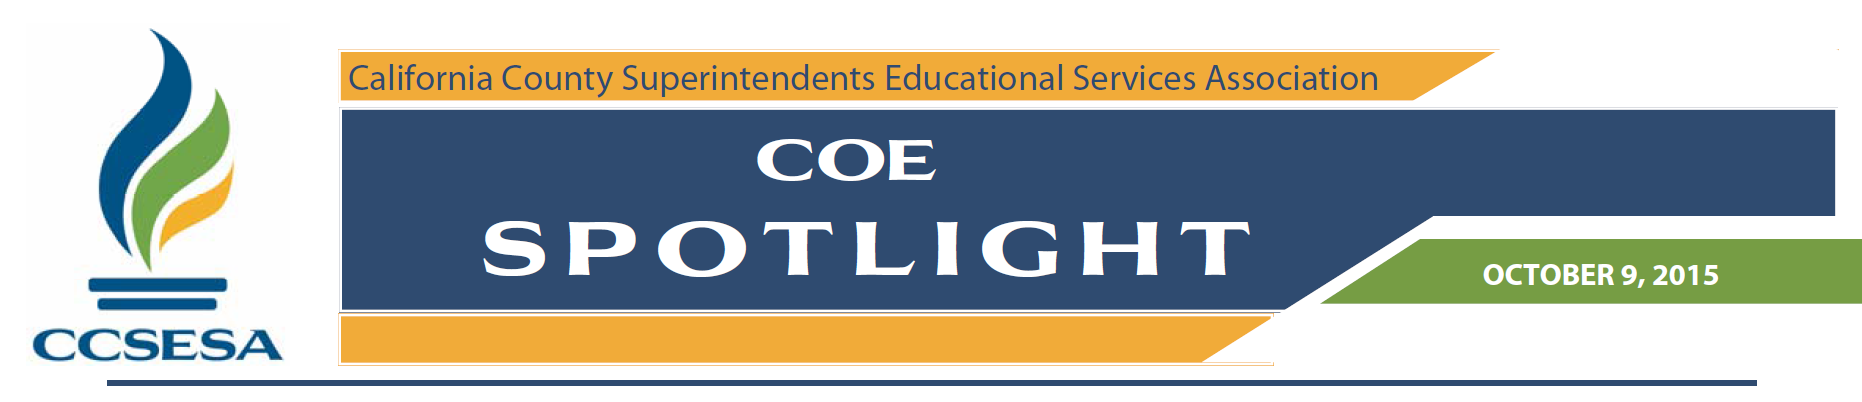 COE Spotlight 10.9.2015